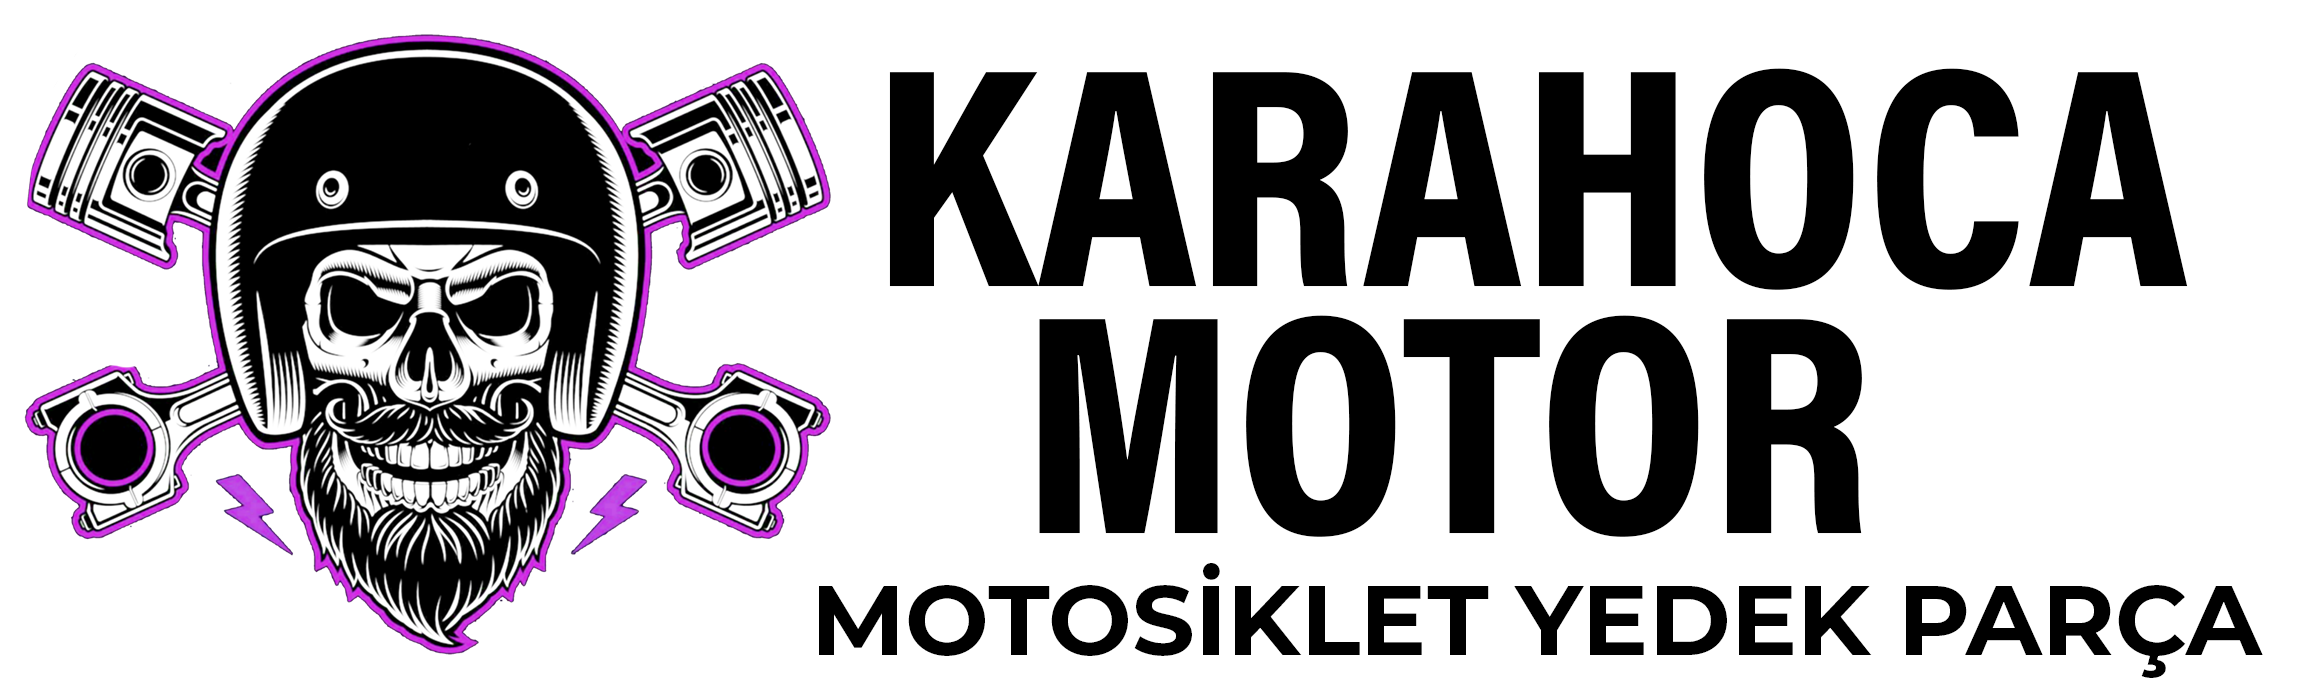 KaraHoca Motor | Motor Yedek Parça